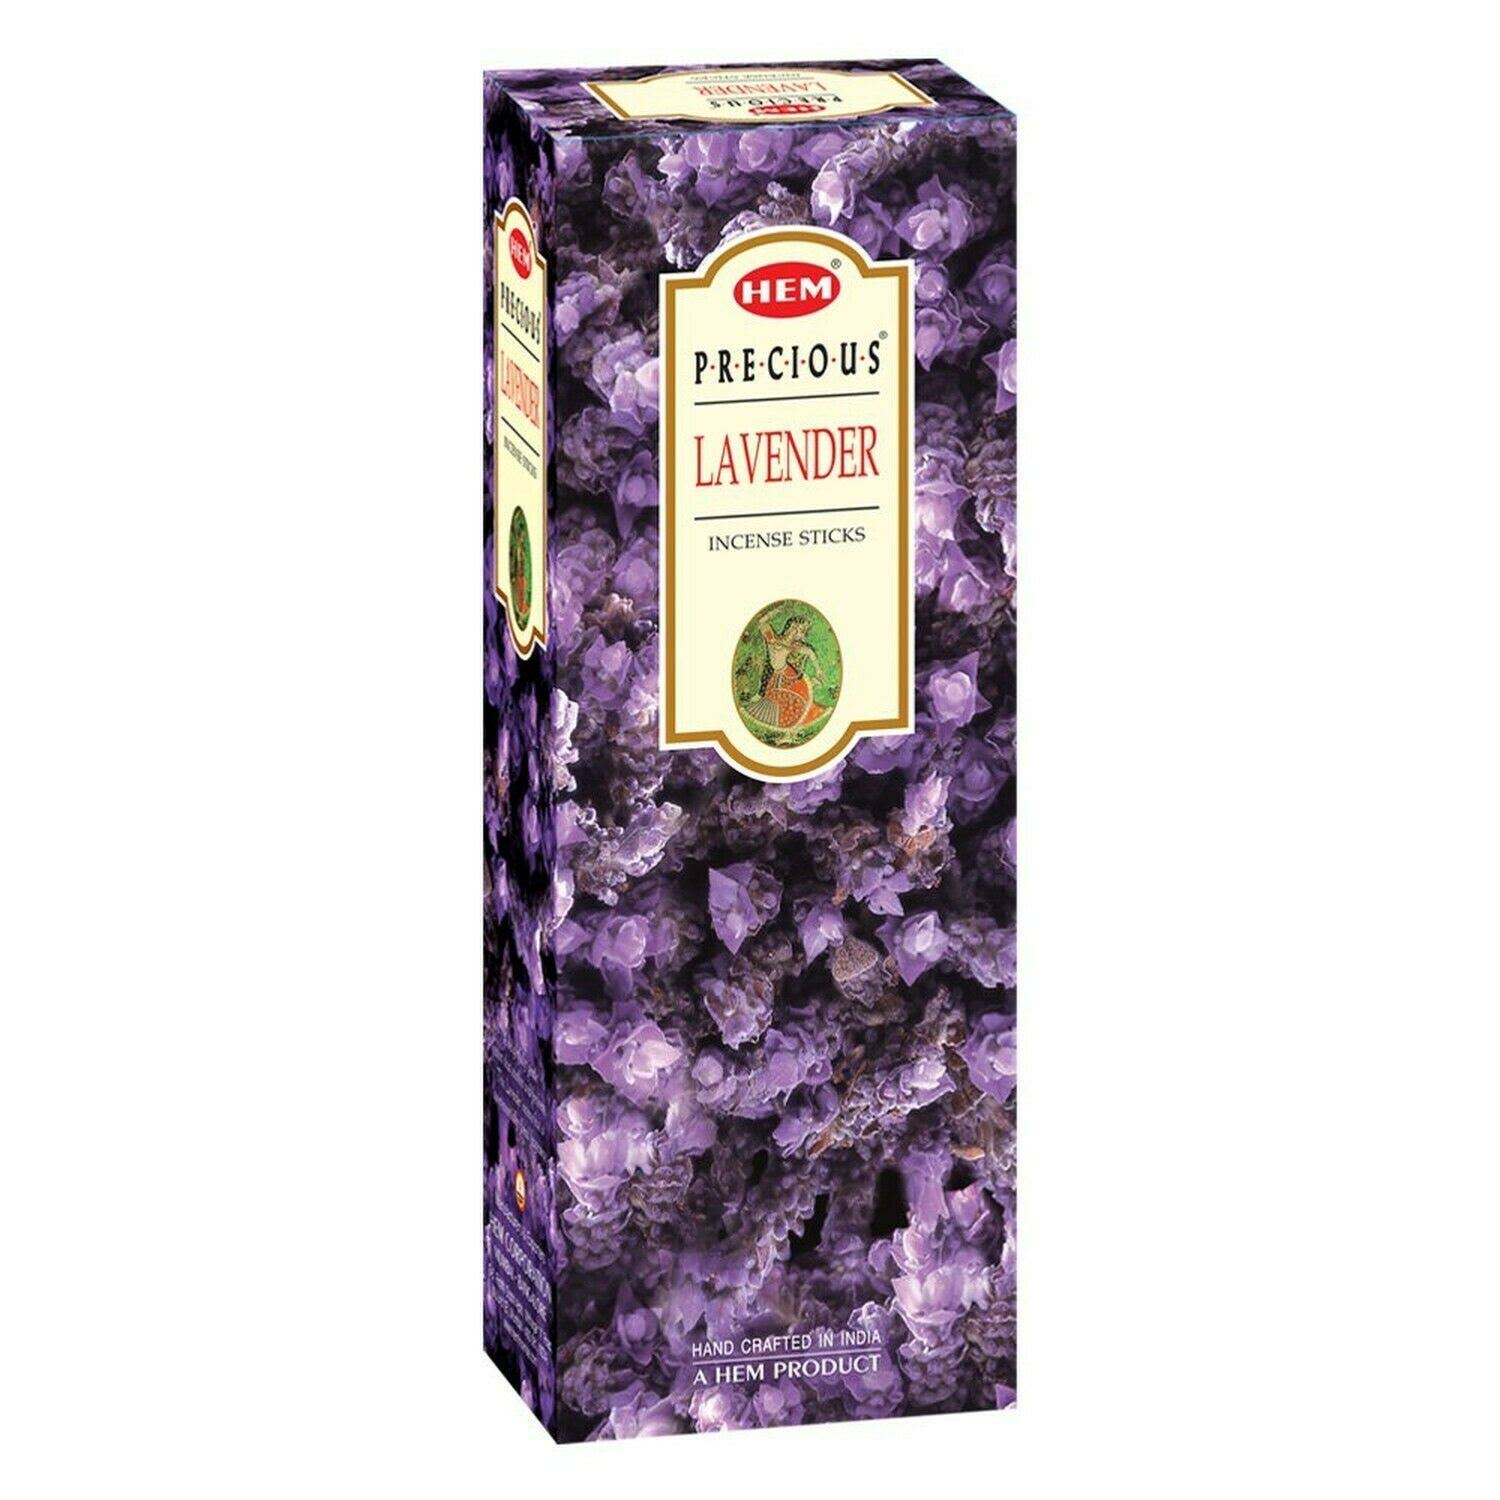 Hem Lavender Incense Sticks - 120ct